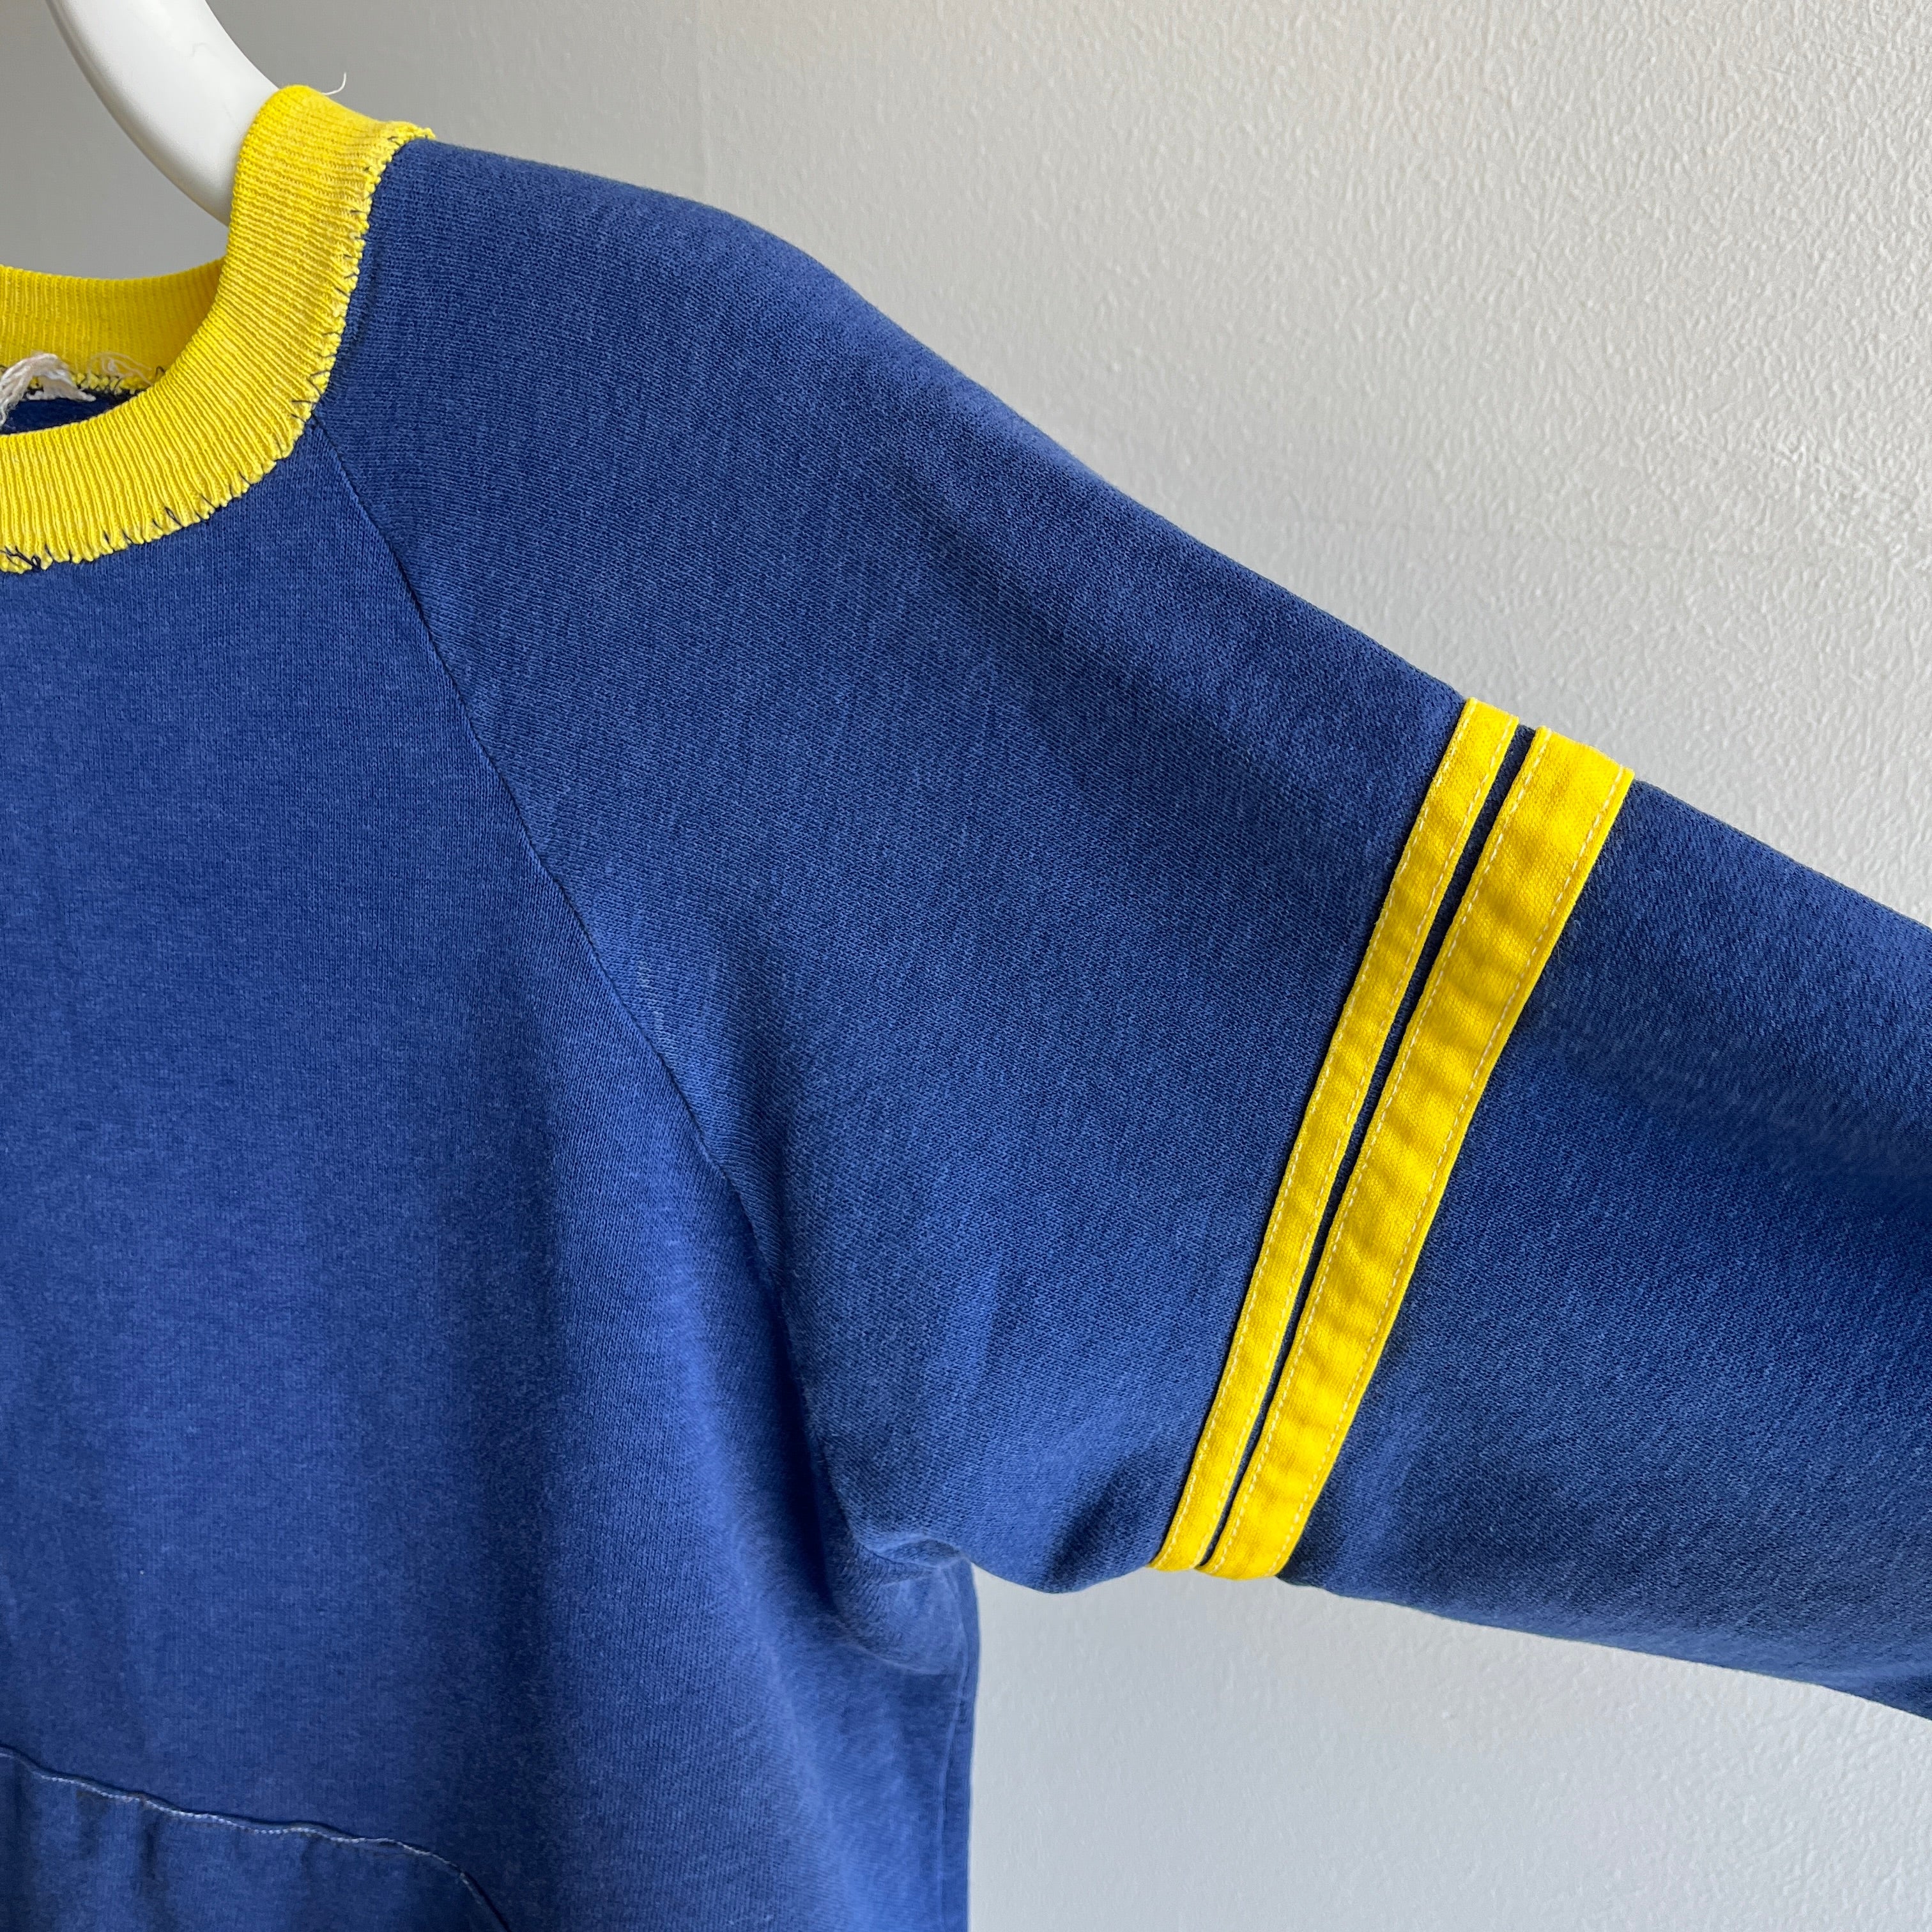 Sweat-shirt bleu marine et jaune super fin et réparé des années 1970 - Collection personnelle